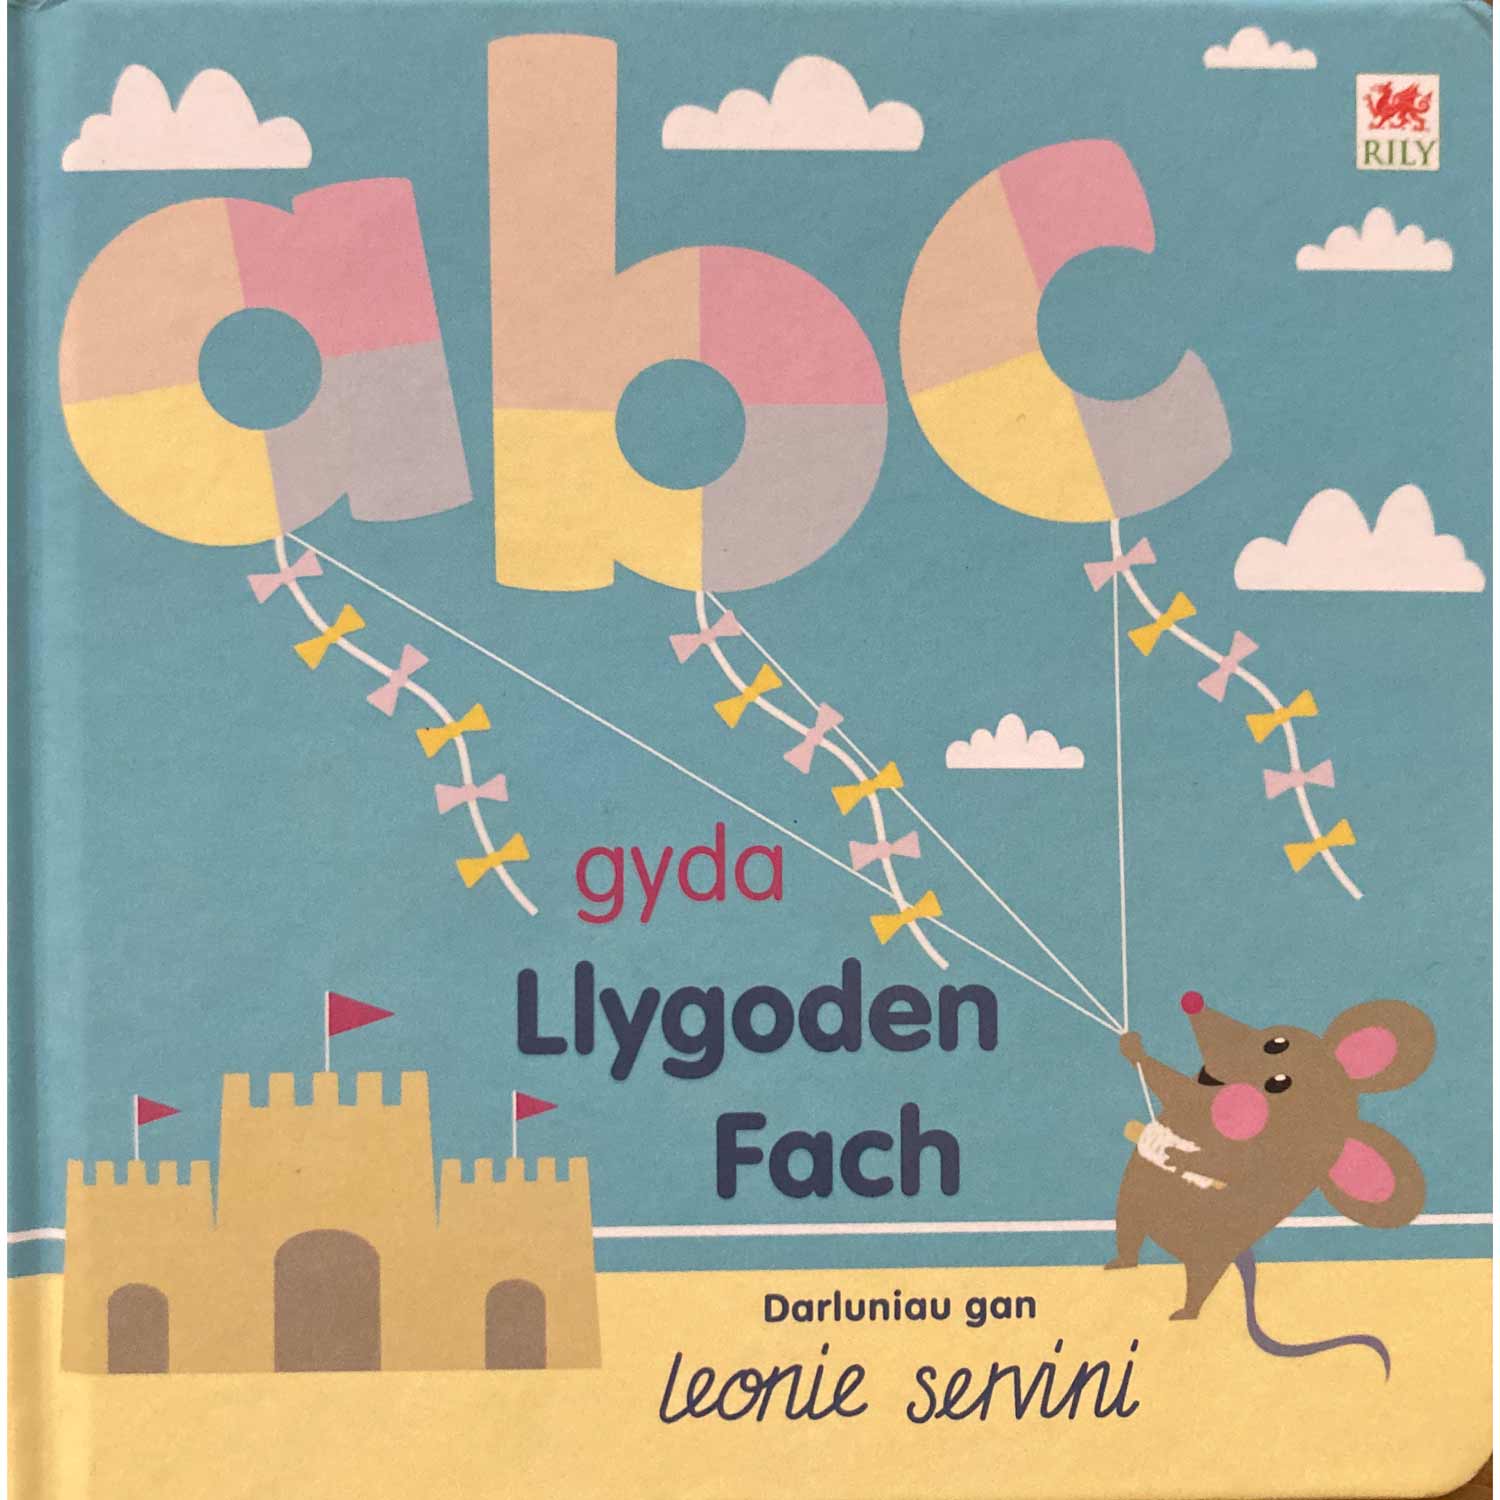 ABC gyda Llygoden Fach - Leonie Servini